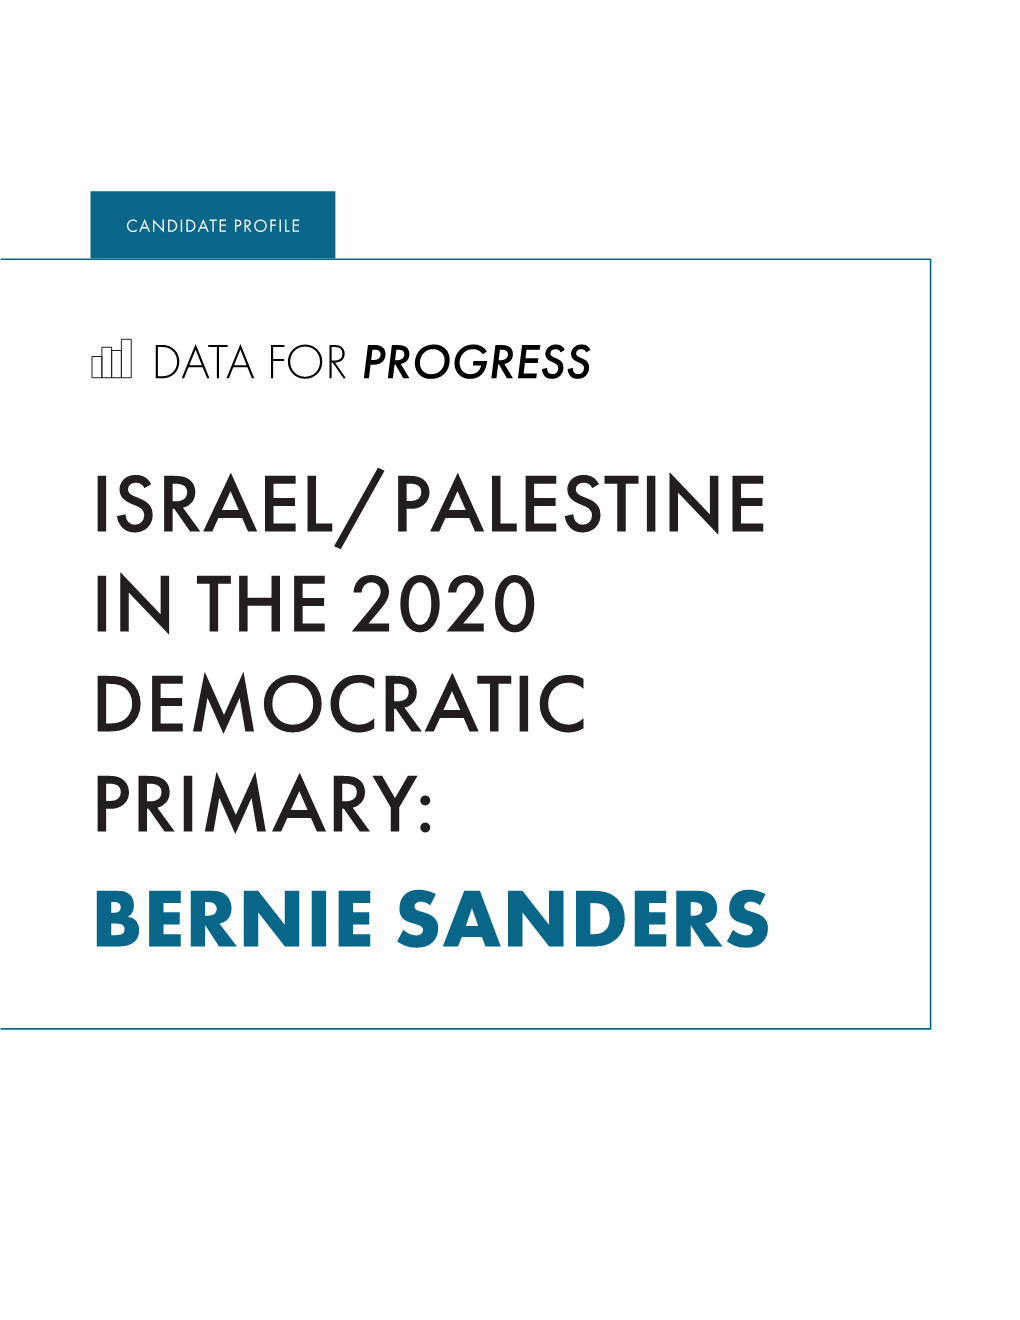 Israel/Palestine in the 2020 Democratic Primary: Bernie Sanders